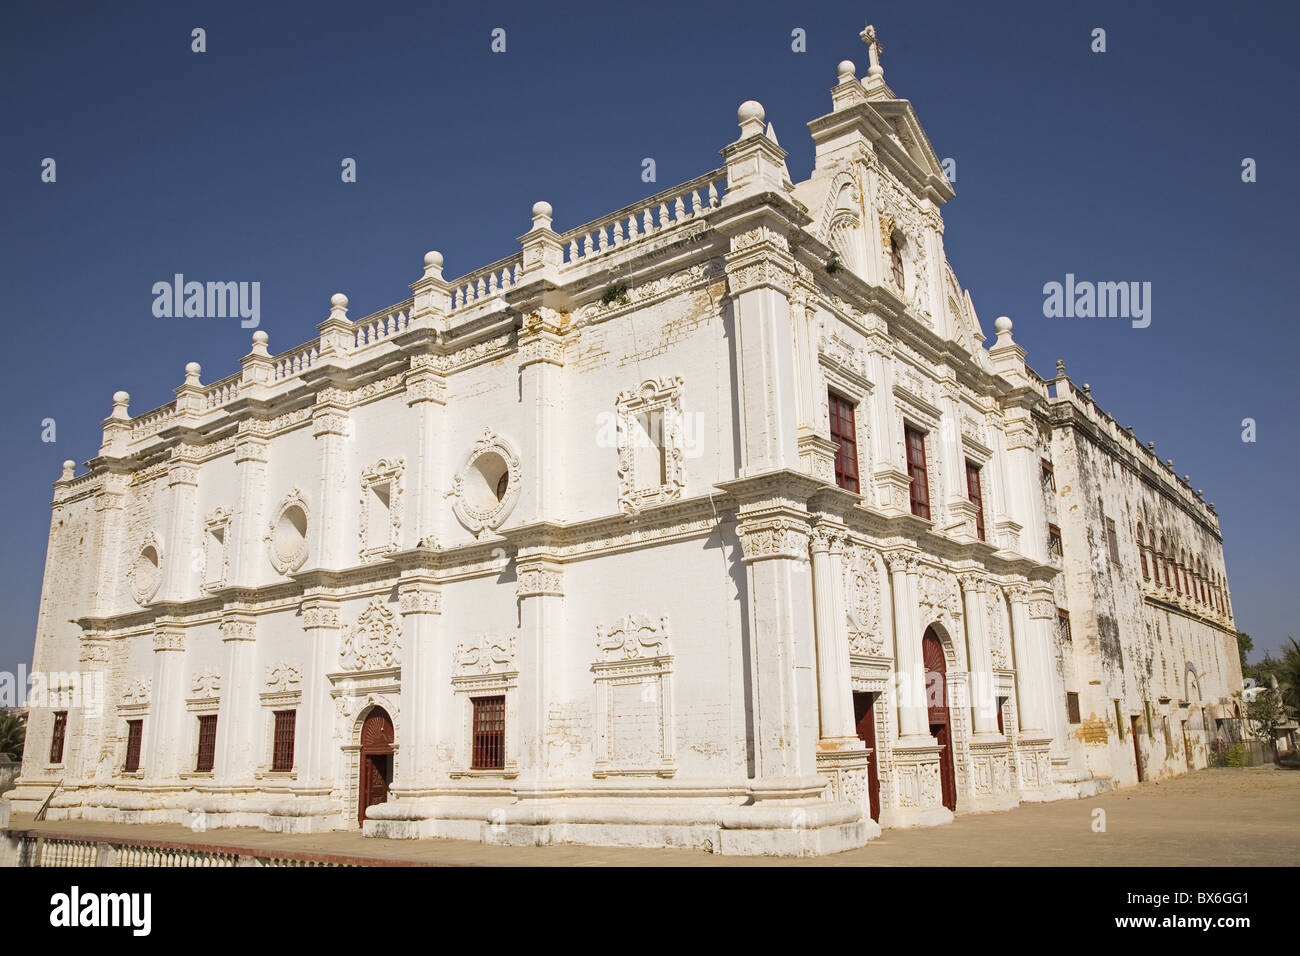 La Chiesa di San Paolo nell'ex colonia portoghese di Diu, il territorio dell' Unione del Diu e Daman, India, Asia Foto Stock